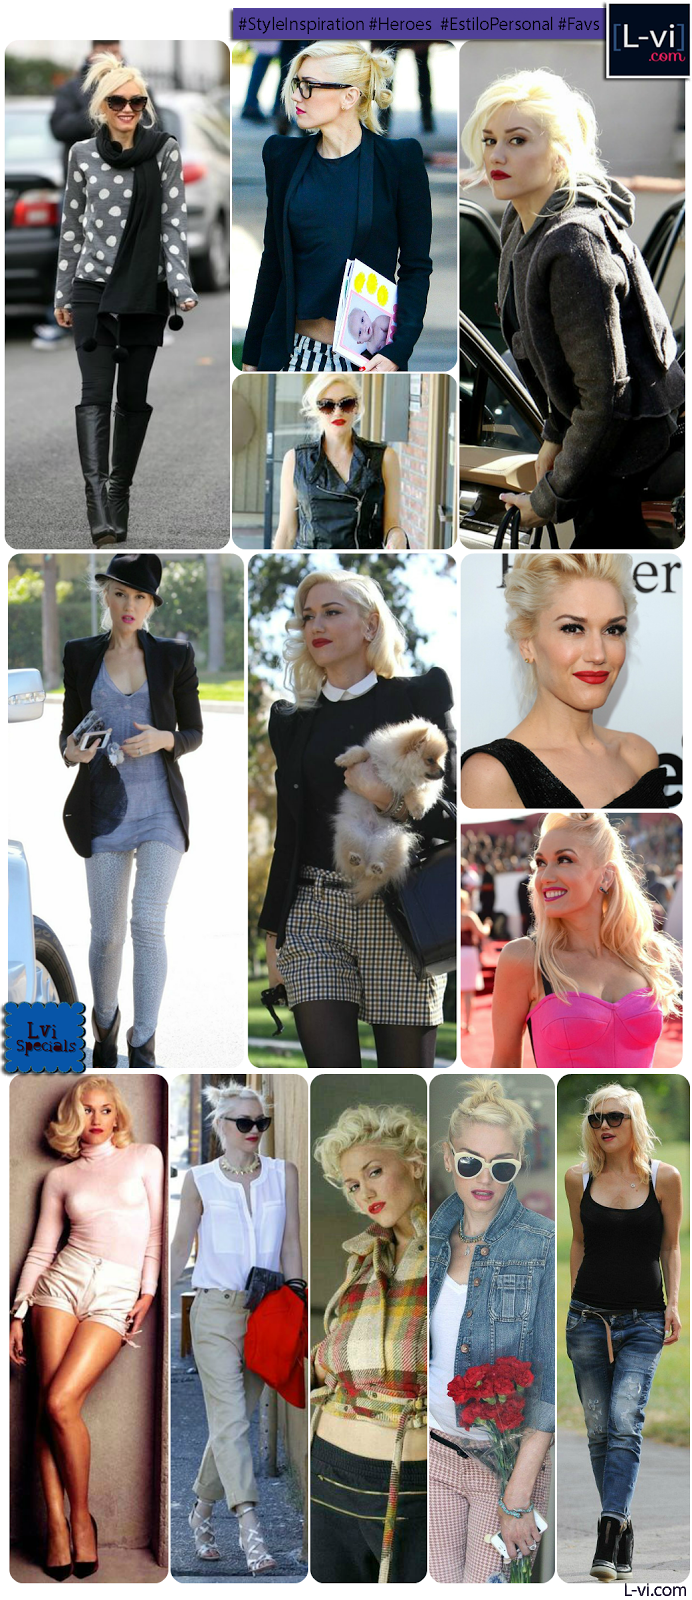 [Style Inspiration]: Gwen Stefani / Estilo que inspira:  L-vi.com